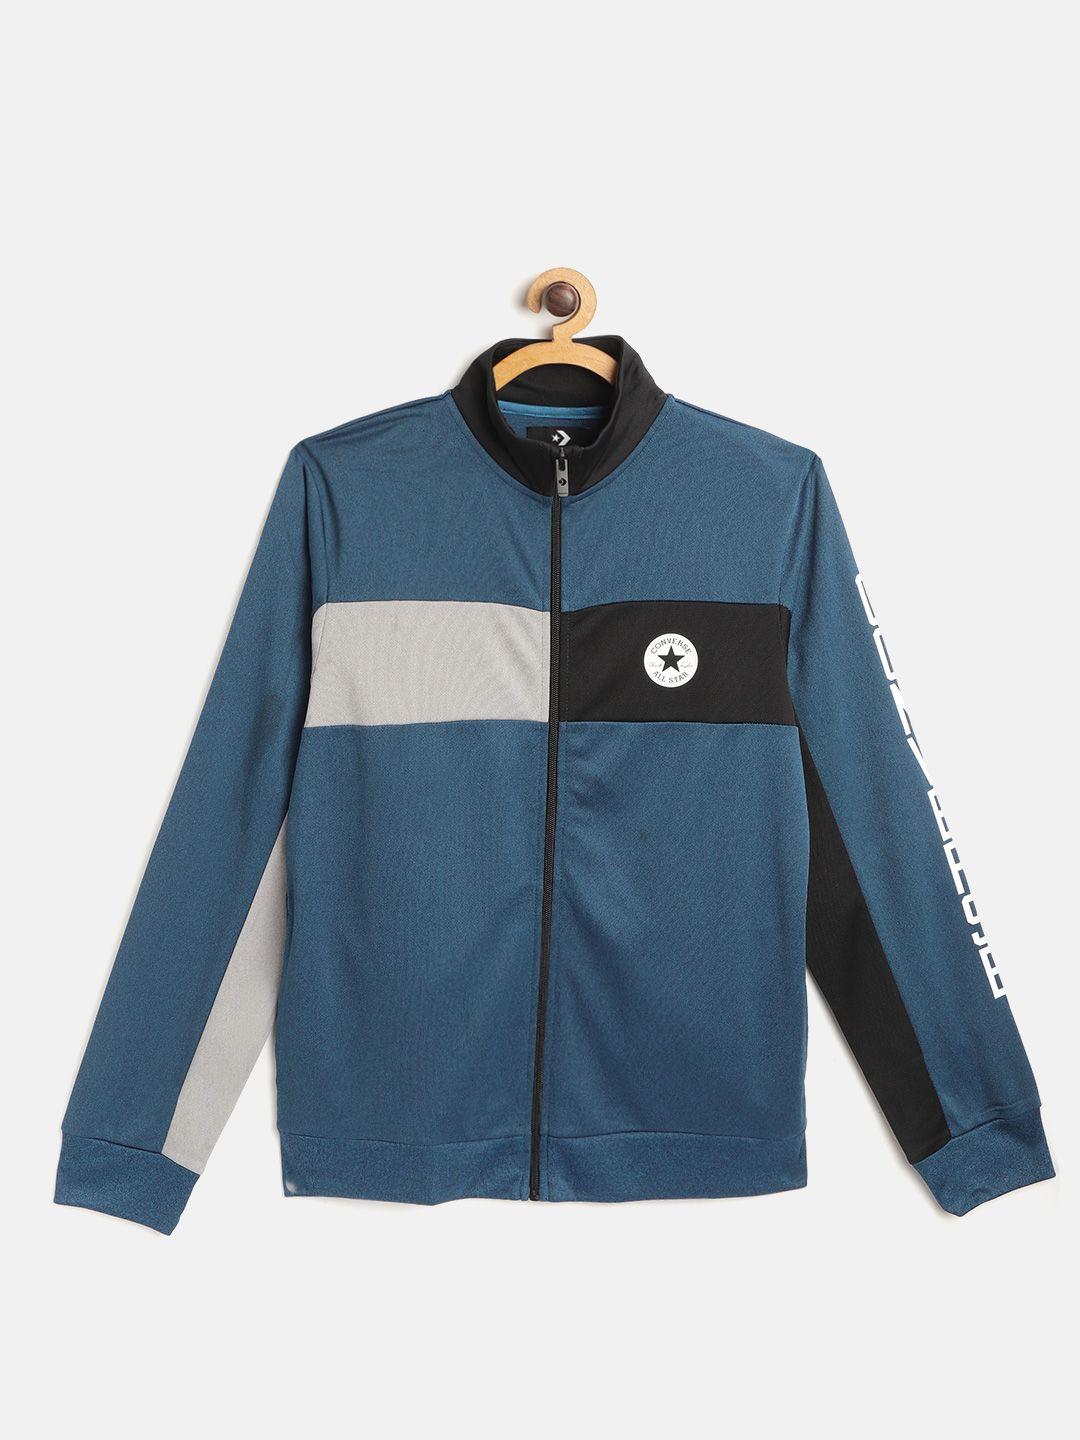 converse boys teal blue & black colourblocked sporty jacket